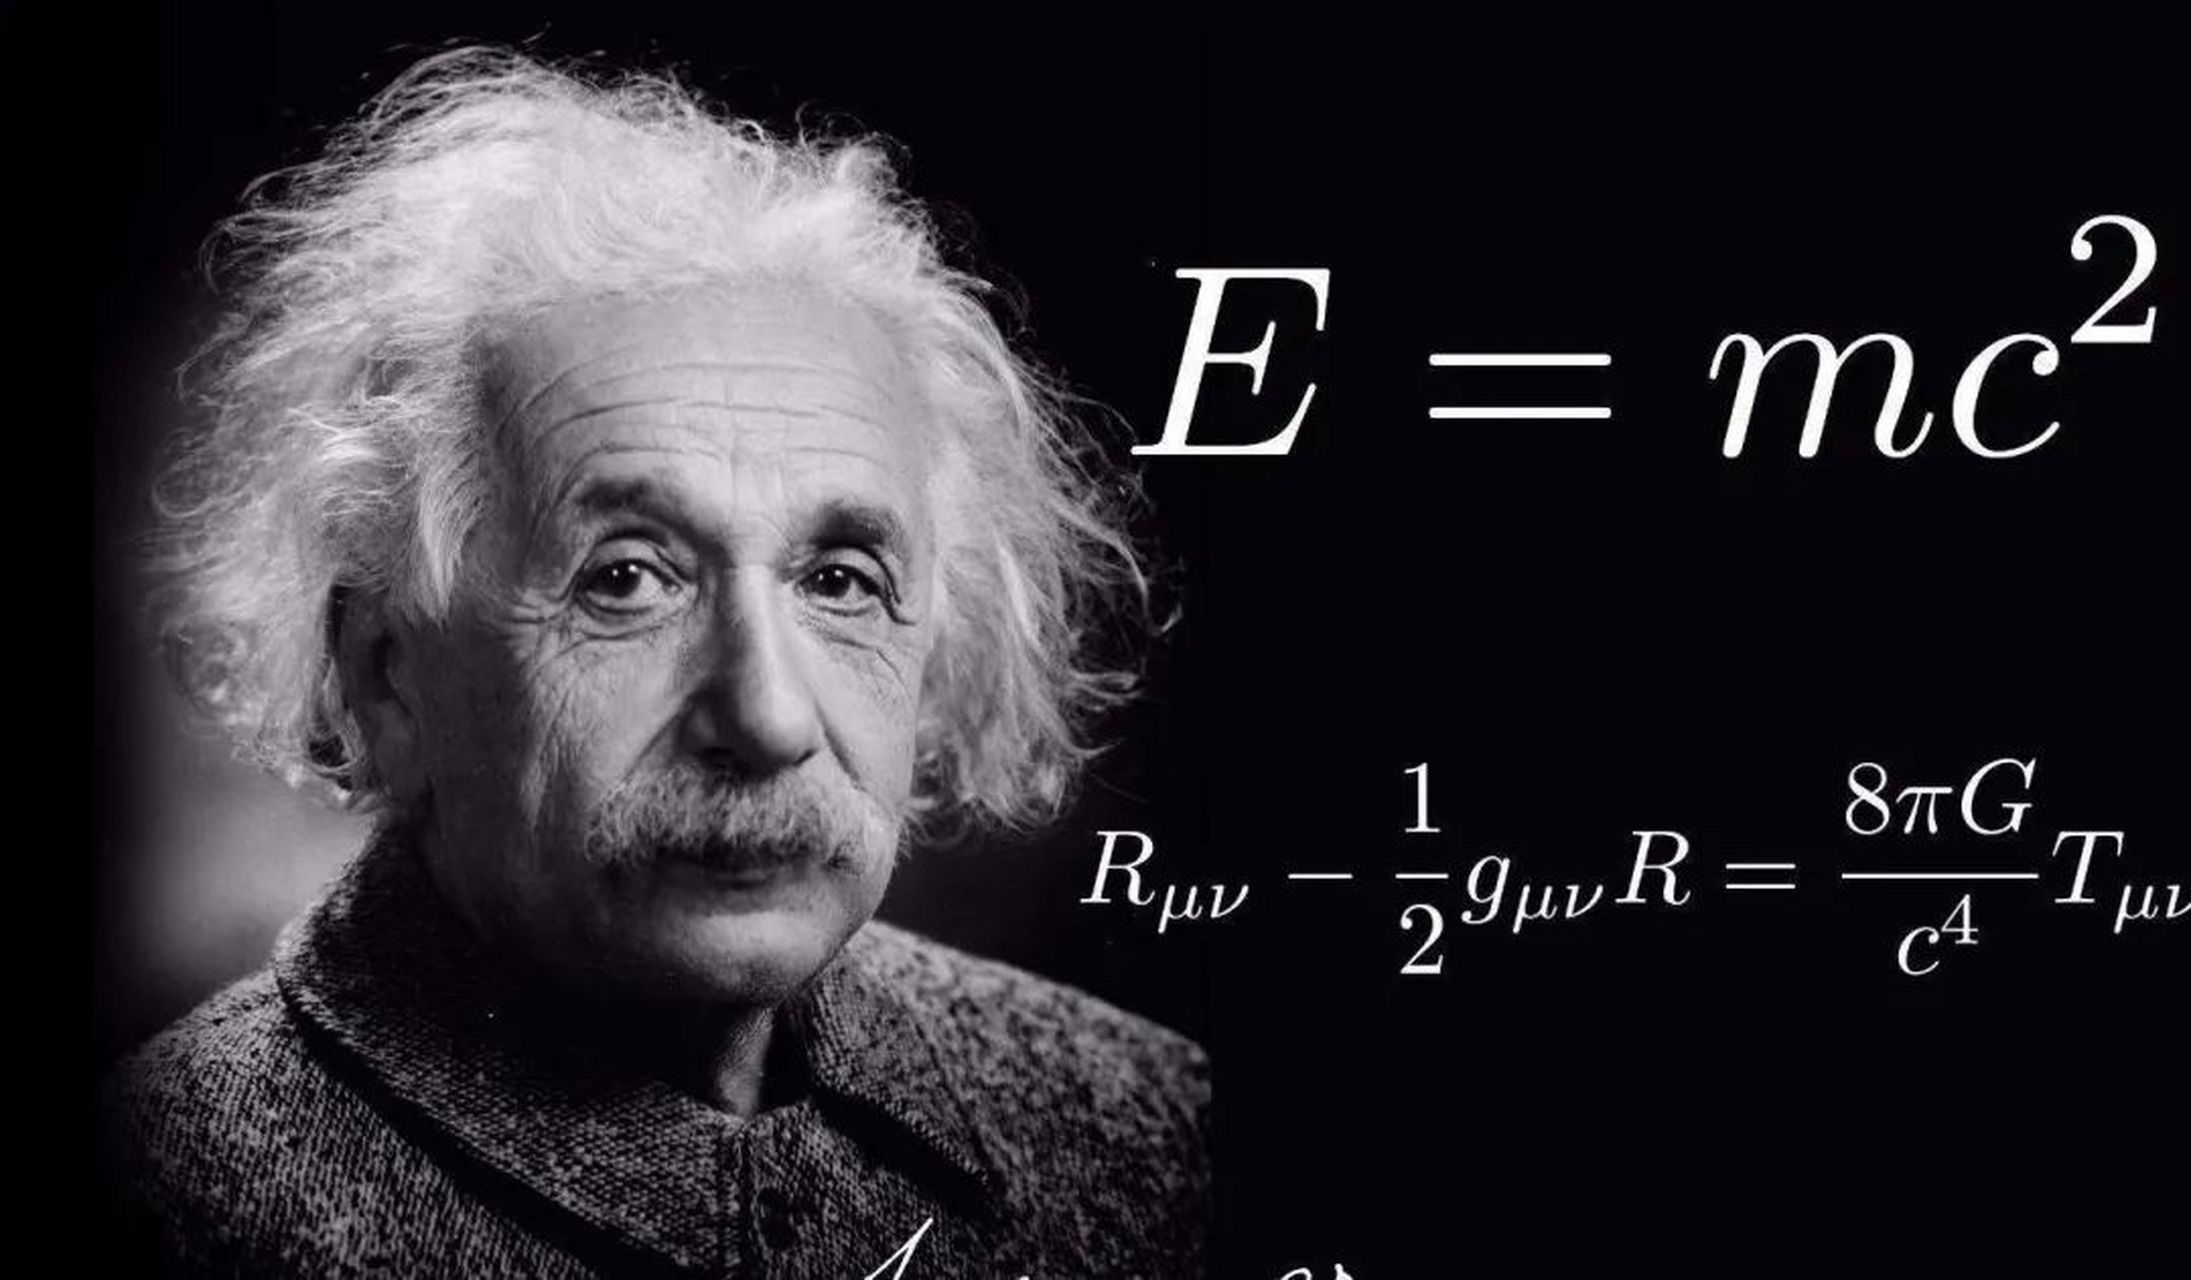 爱因斯坦壁纸高清图片